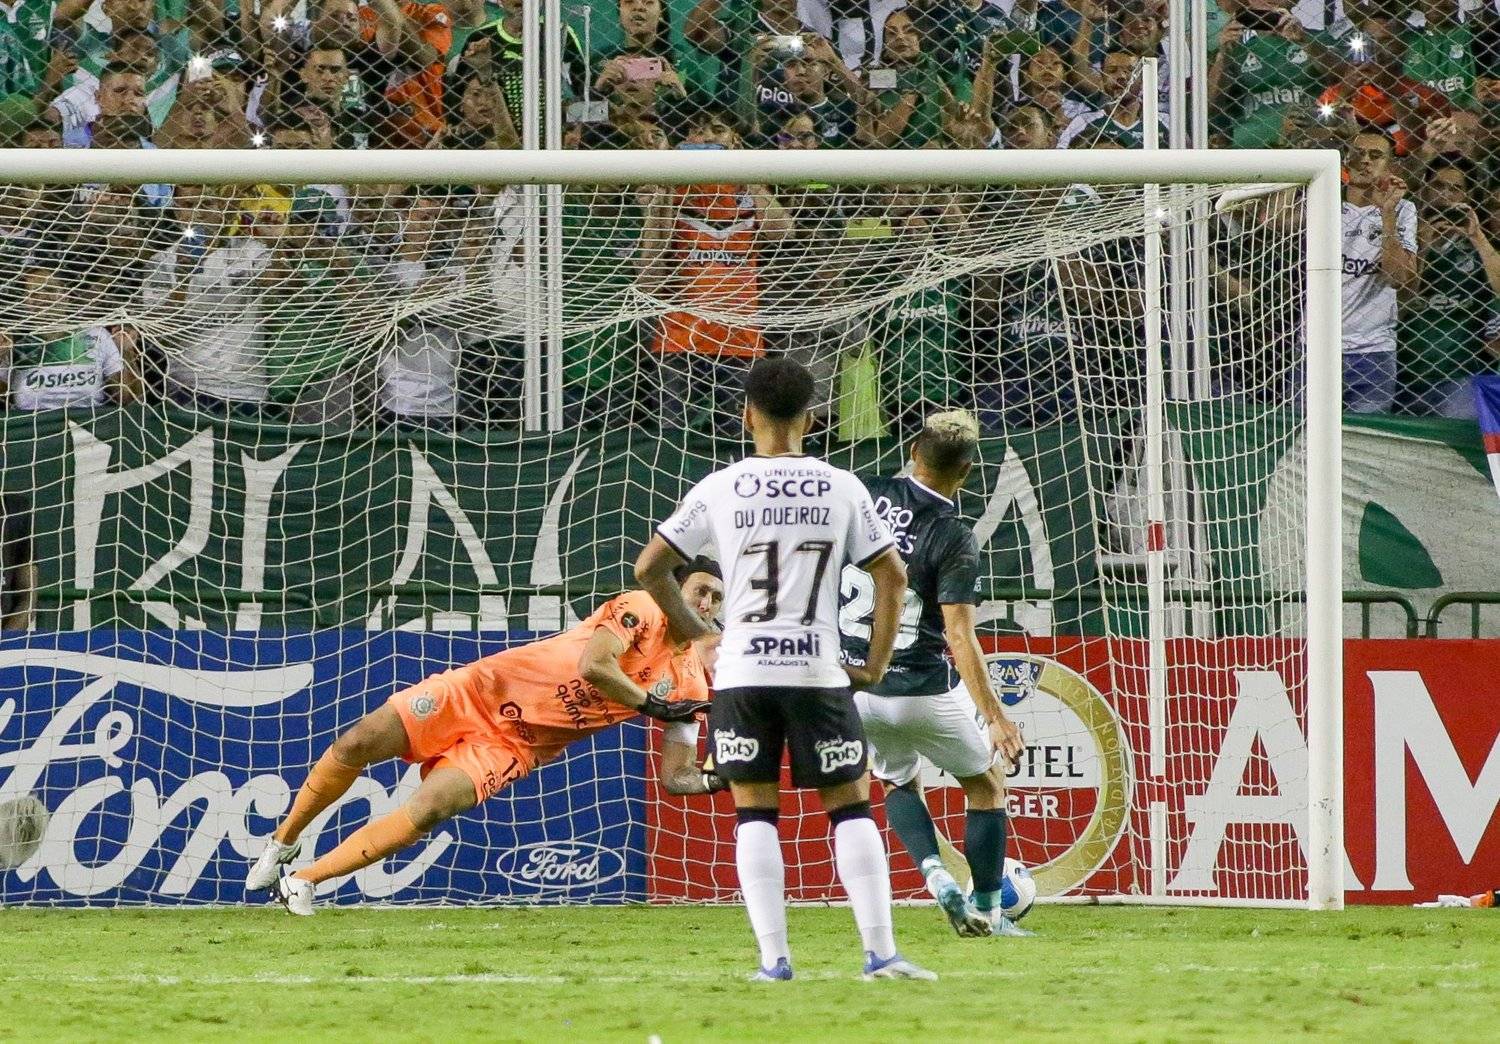 Cássio, o melhor goleiro do Brasil, salva o Corinthians. De novo